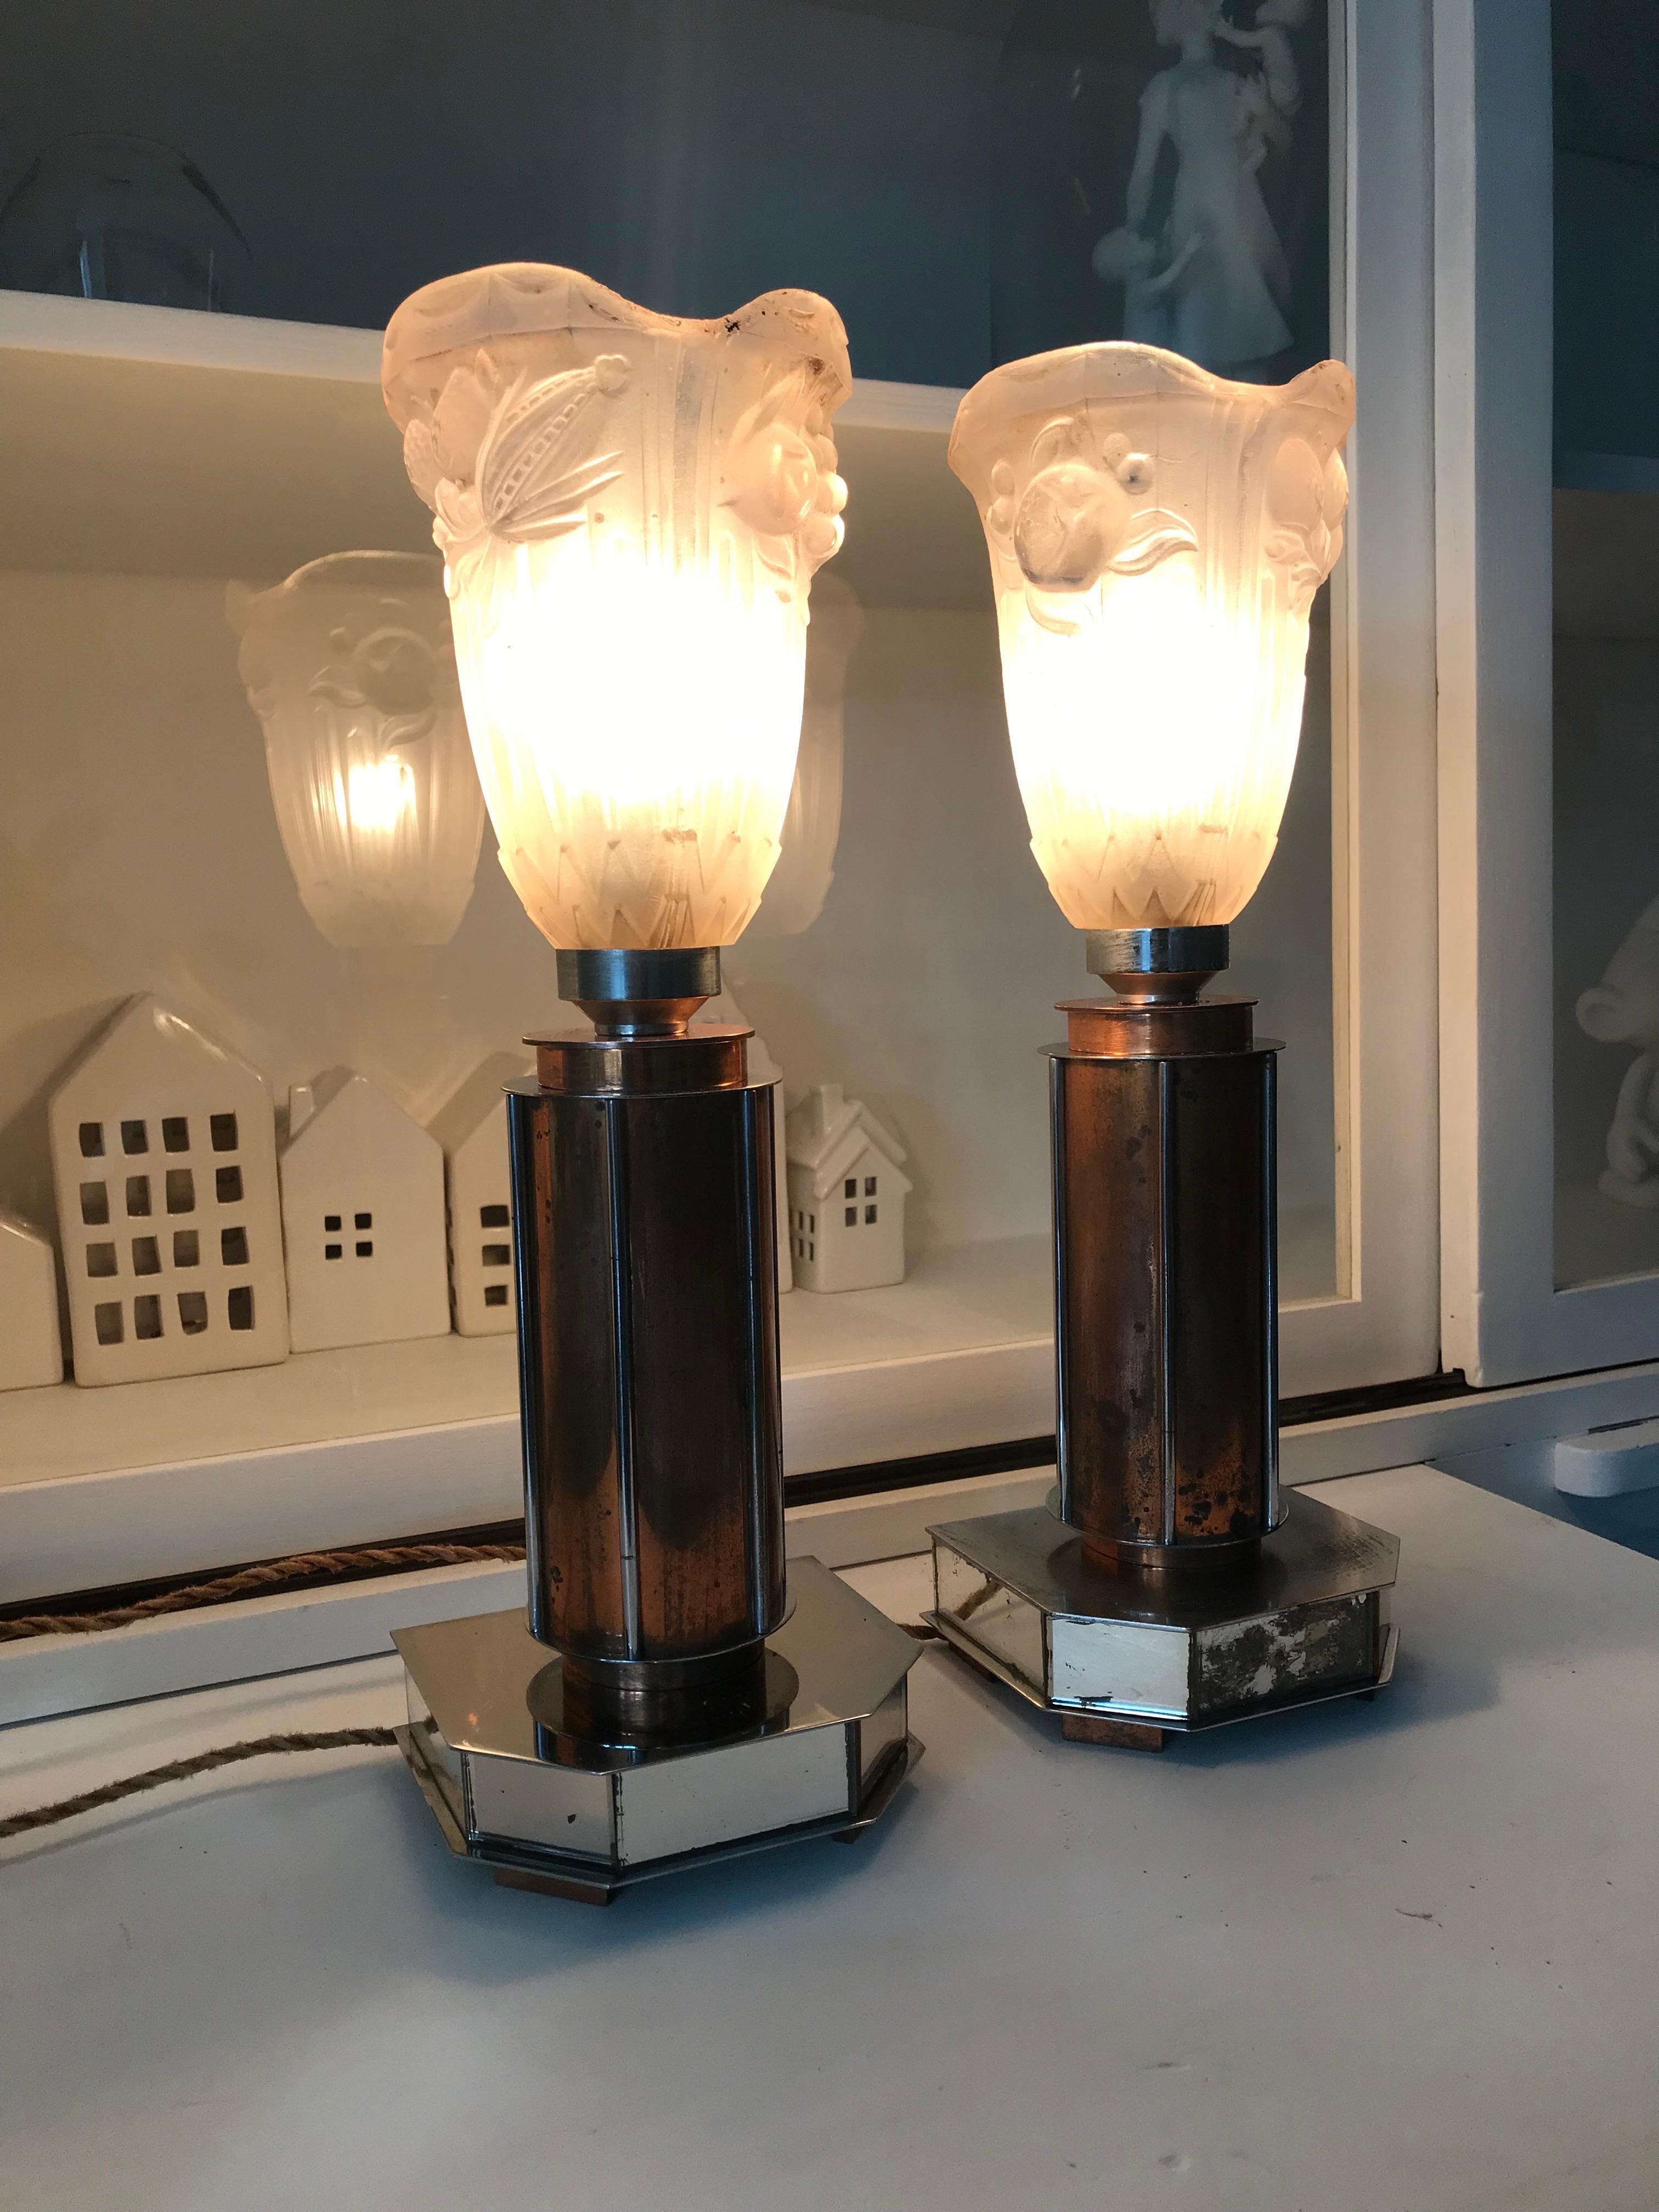 Seltenes Paar Tischlampen mit zylindrischem Design und Glasschirmen von P. Gilles.

Diese stilvollen Art-Déco-Tischlampen sind auf geometrischen Sockeln mit vier Kupferfüßen aufgebaut. Der verchromte Sockel ist an allen Seiten mit kleinen Spiegeln